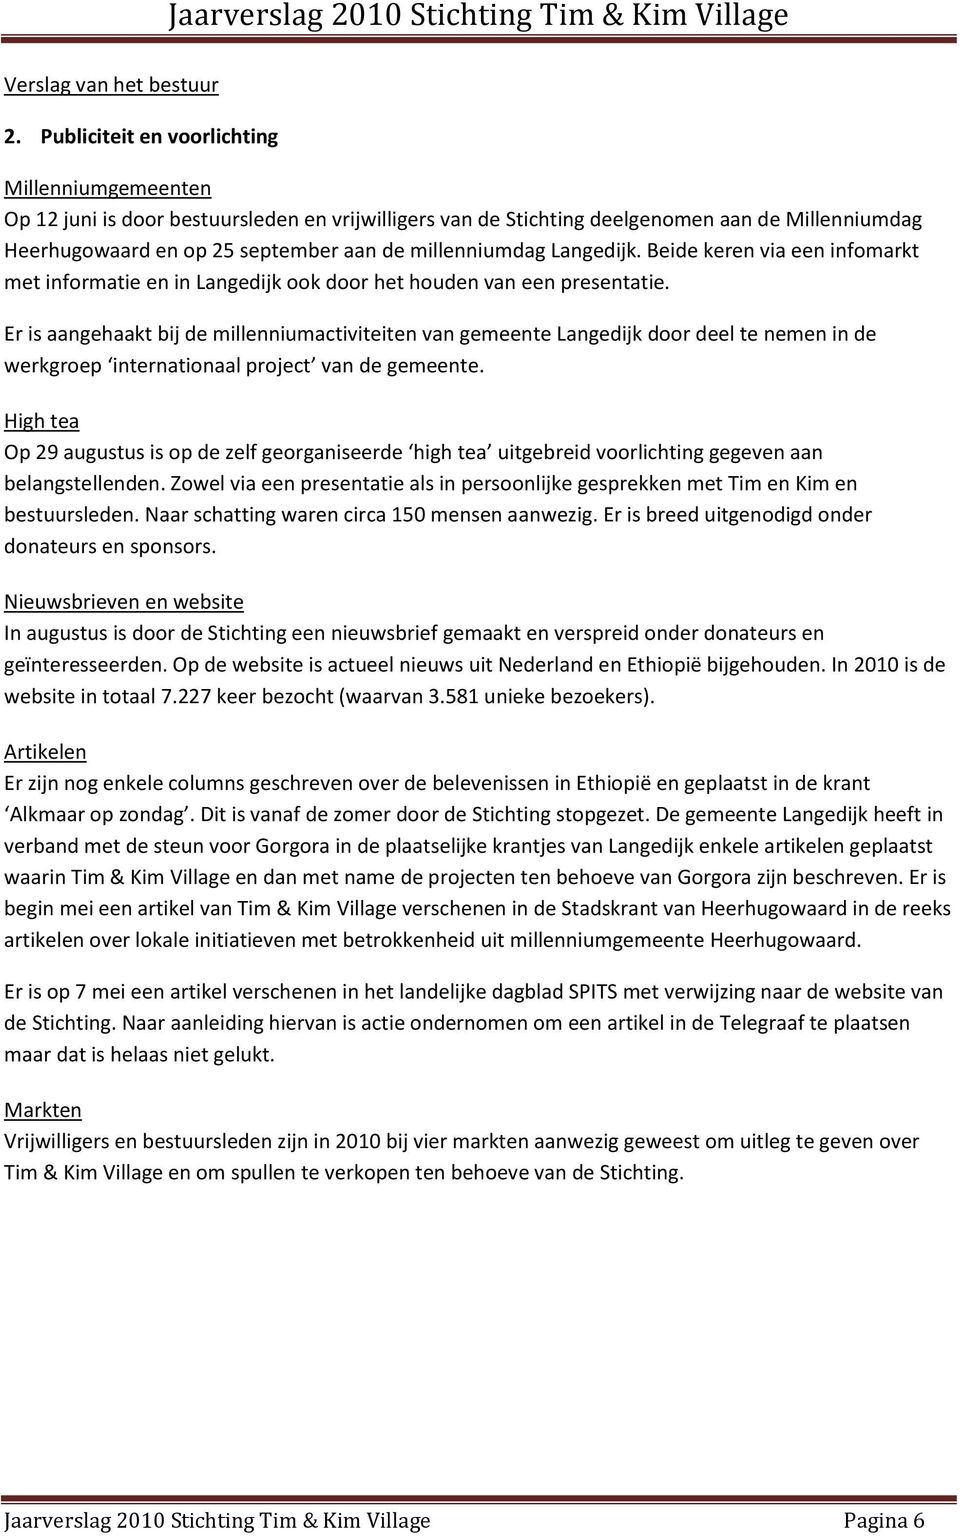 millenniumdag Langedijk. Beide keren via een infomarkt met informatie en in Langedijk ook door het houden van een presentatie.